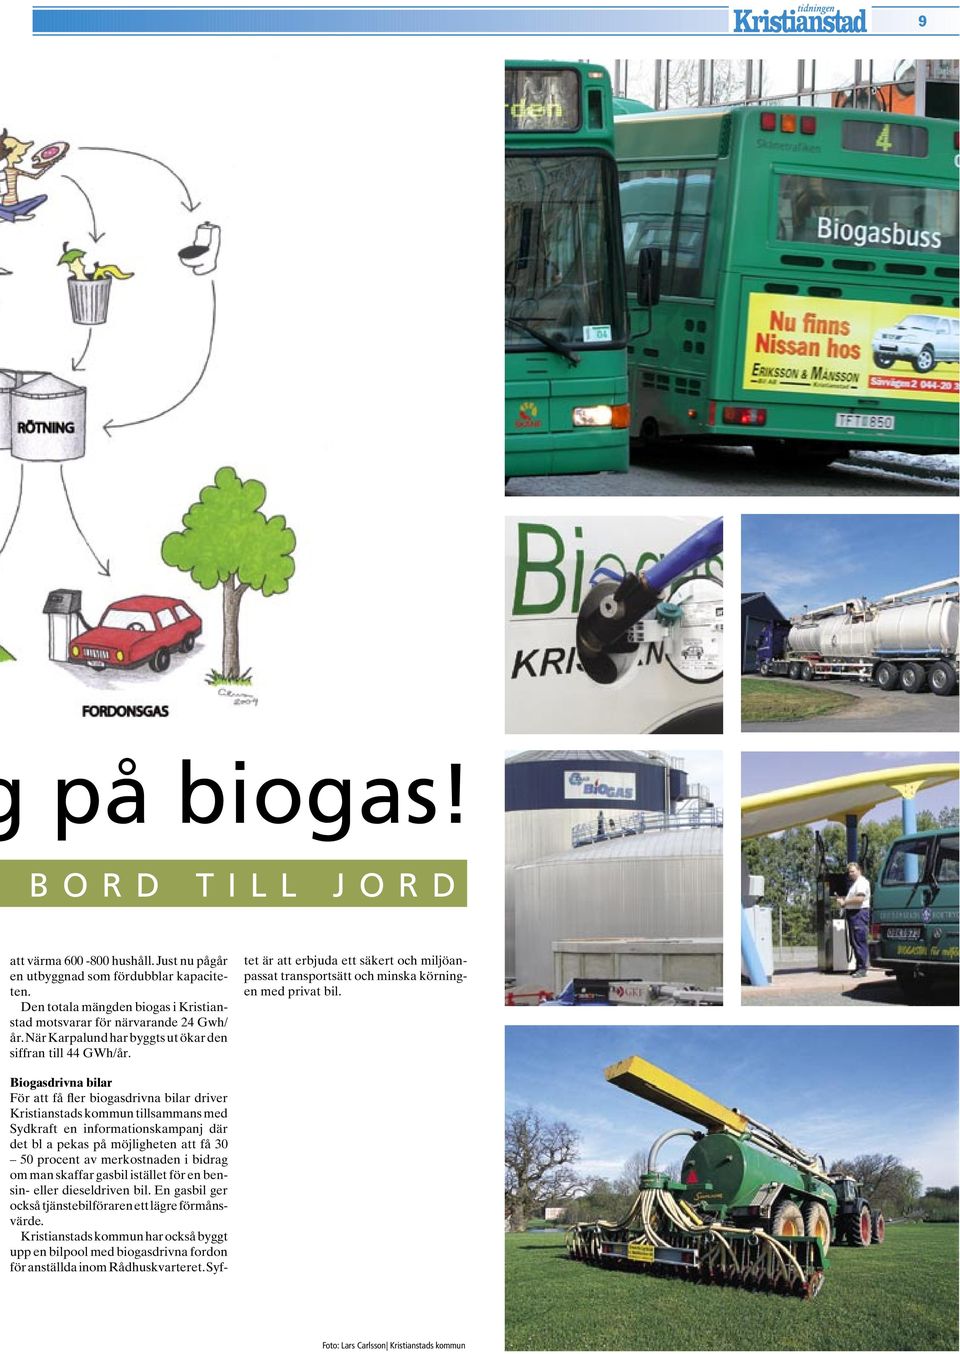 Biogasdrivna bilar För att få fler biogasdrivna bilar driver Kristianstads kommun tillsammans med Sydkraft en informationskampanj där det bl a pekas på möjligheten att få 30 50 procent av